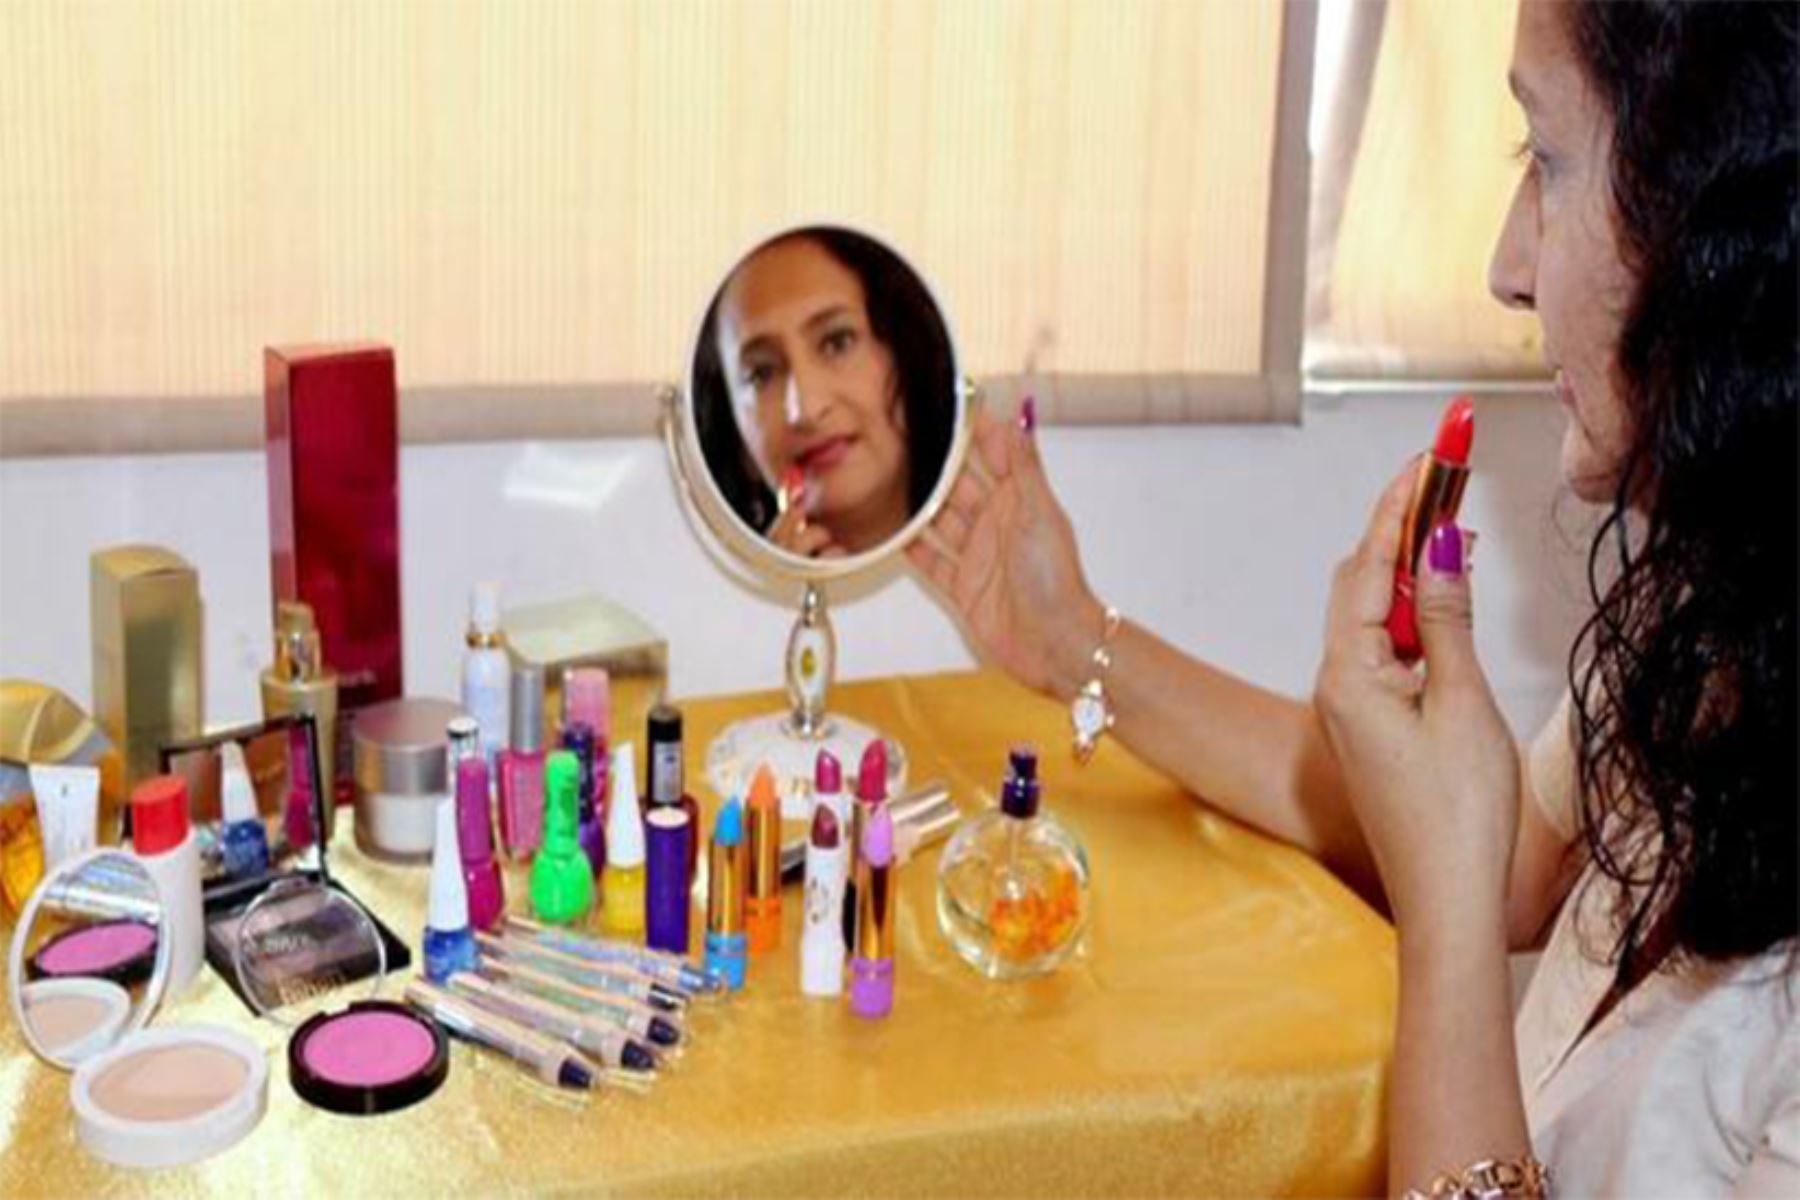 Se recomienda comprar productos cosméticos en lugares autorizados. Foto: ANDINA/Difusión